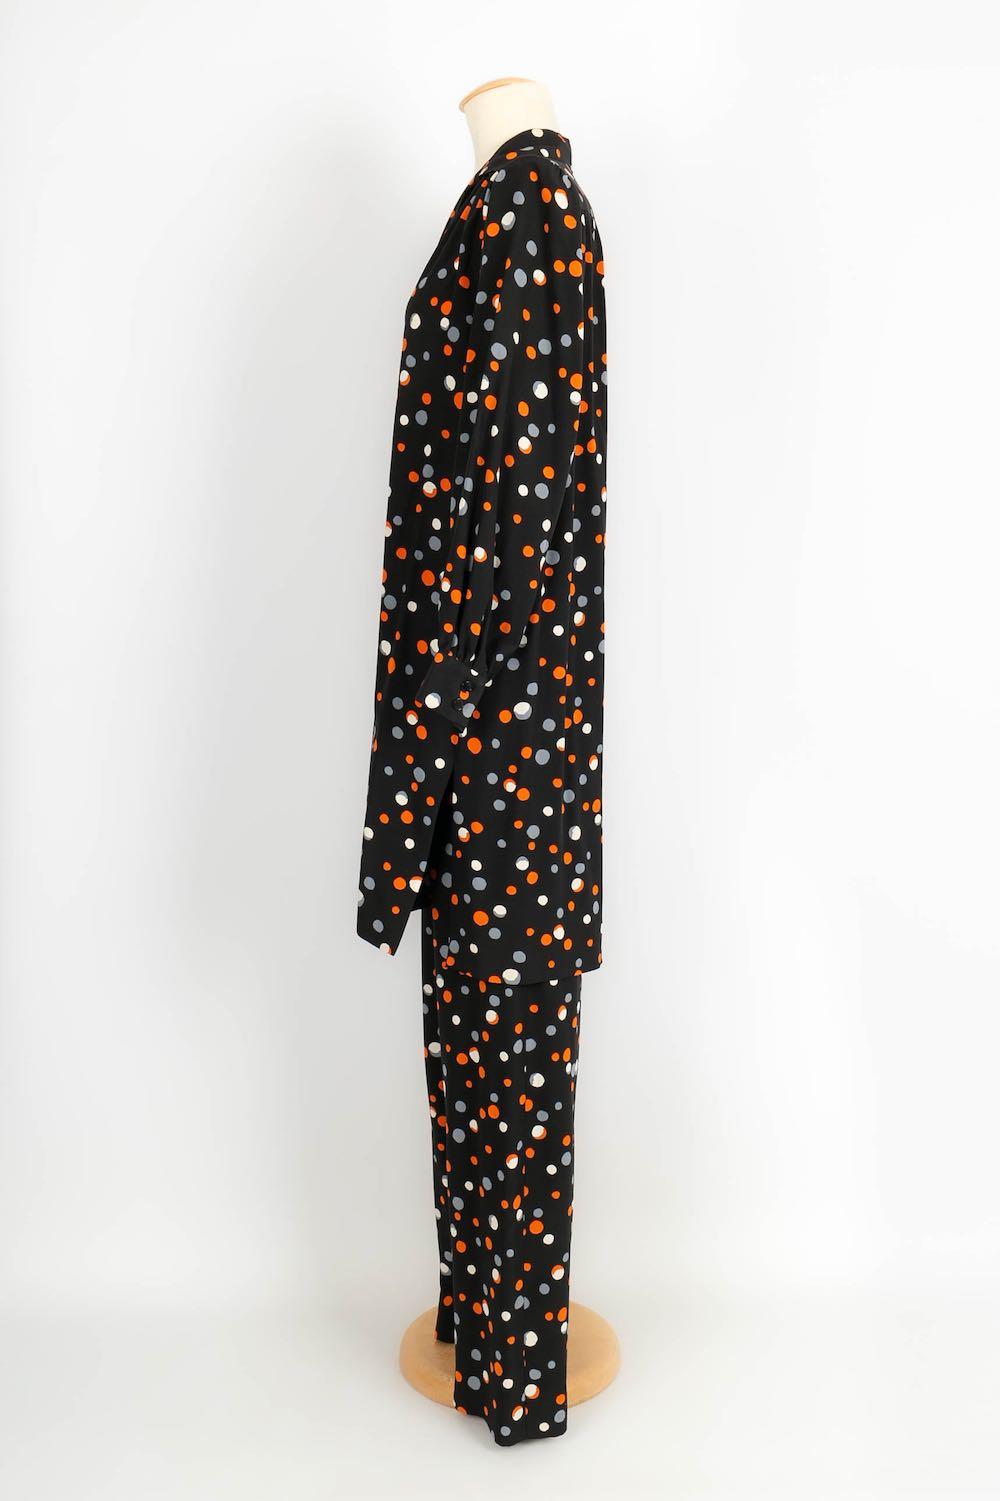 Yves Saint Laurent - (Fabriqué en France) Ensemble Haute Couture composé d'une tunique et d'un pantalon en soie. Pas de taille indiquée, il correspond à un 34FR/36FR.

Informations complémentaires : 
Dimensions : Tunique : Largeur des épaules : 38